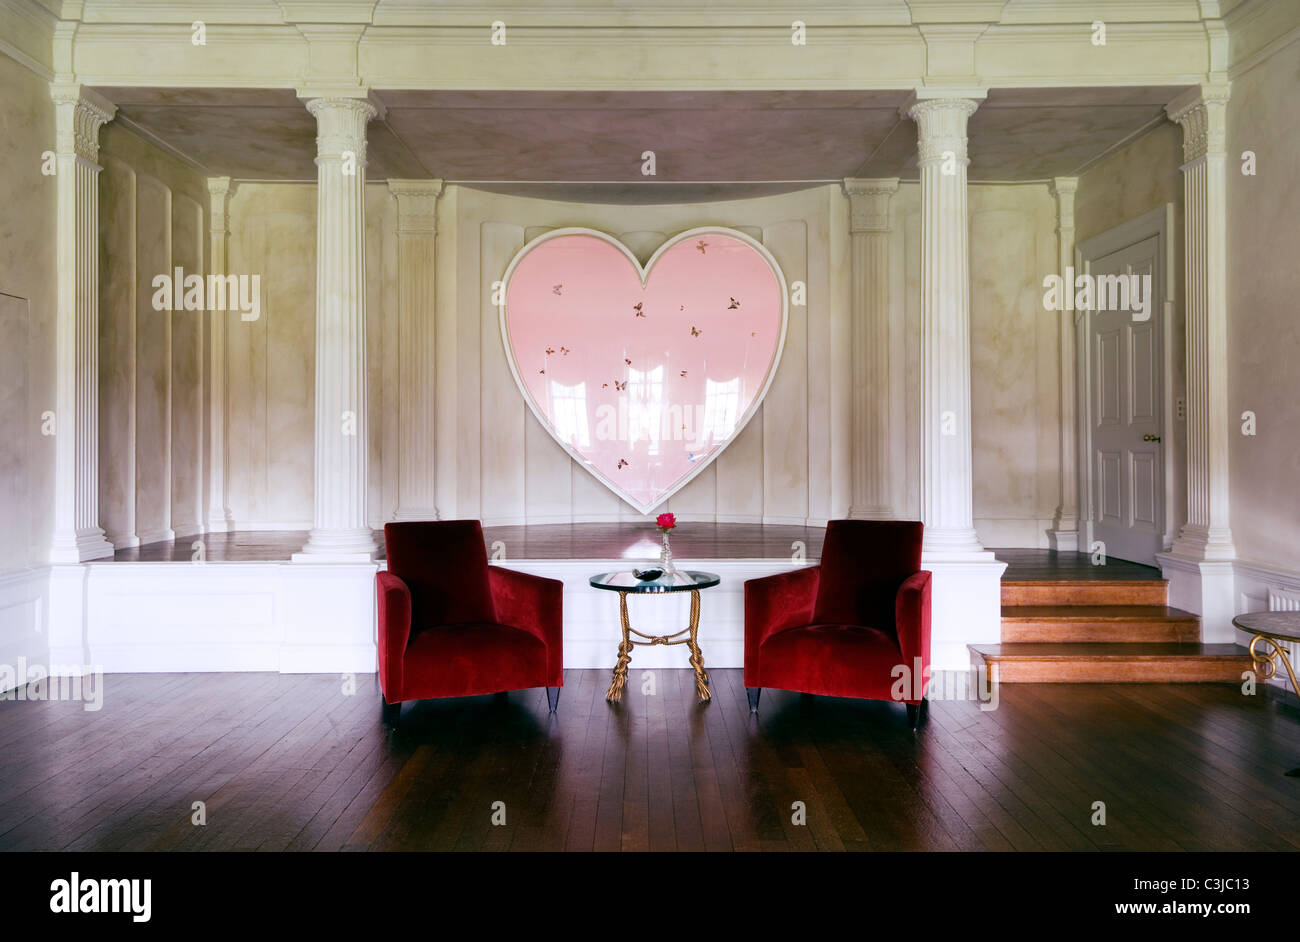 Velluto rosso poltrone in legno di spazio vivente con Damian Hirst a forma di cuore ad opera in background Foto Stock